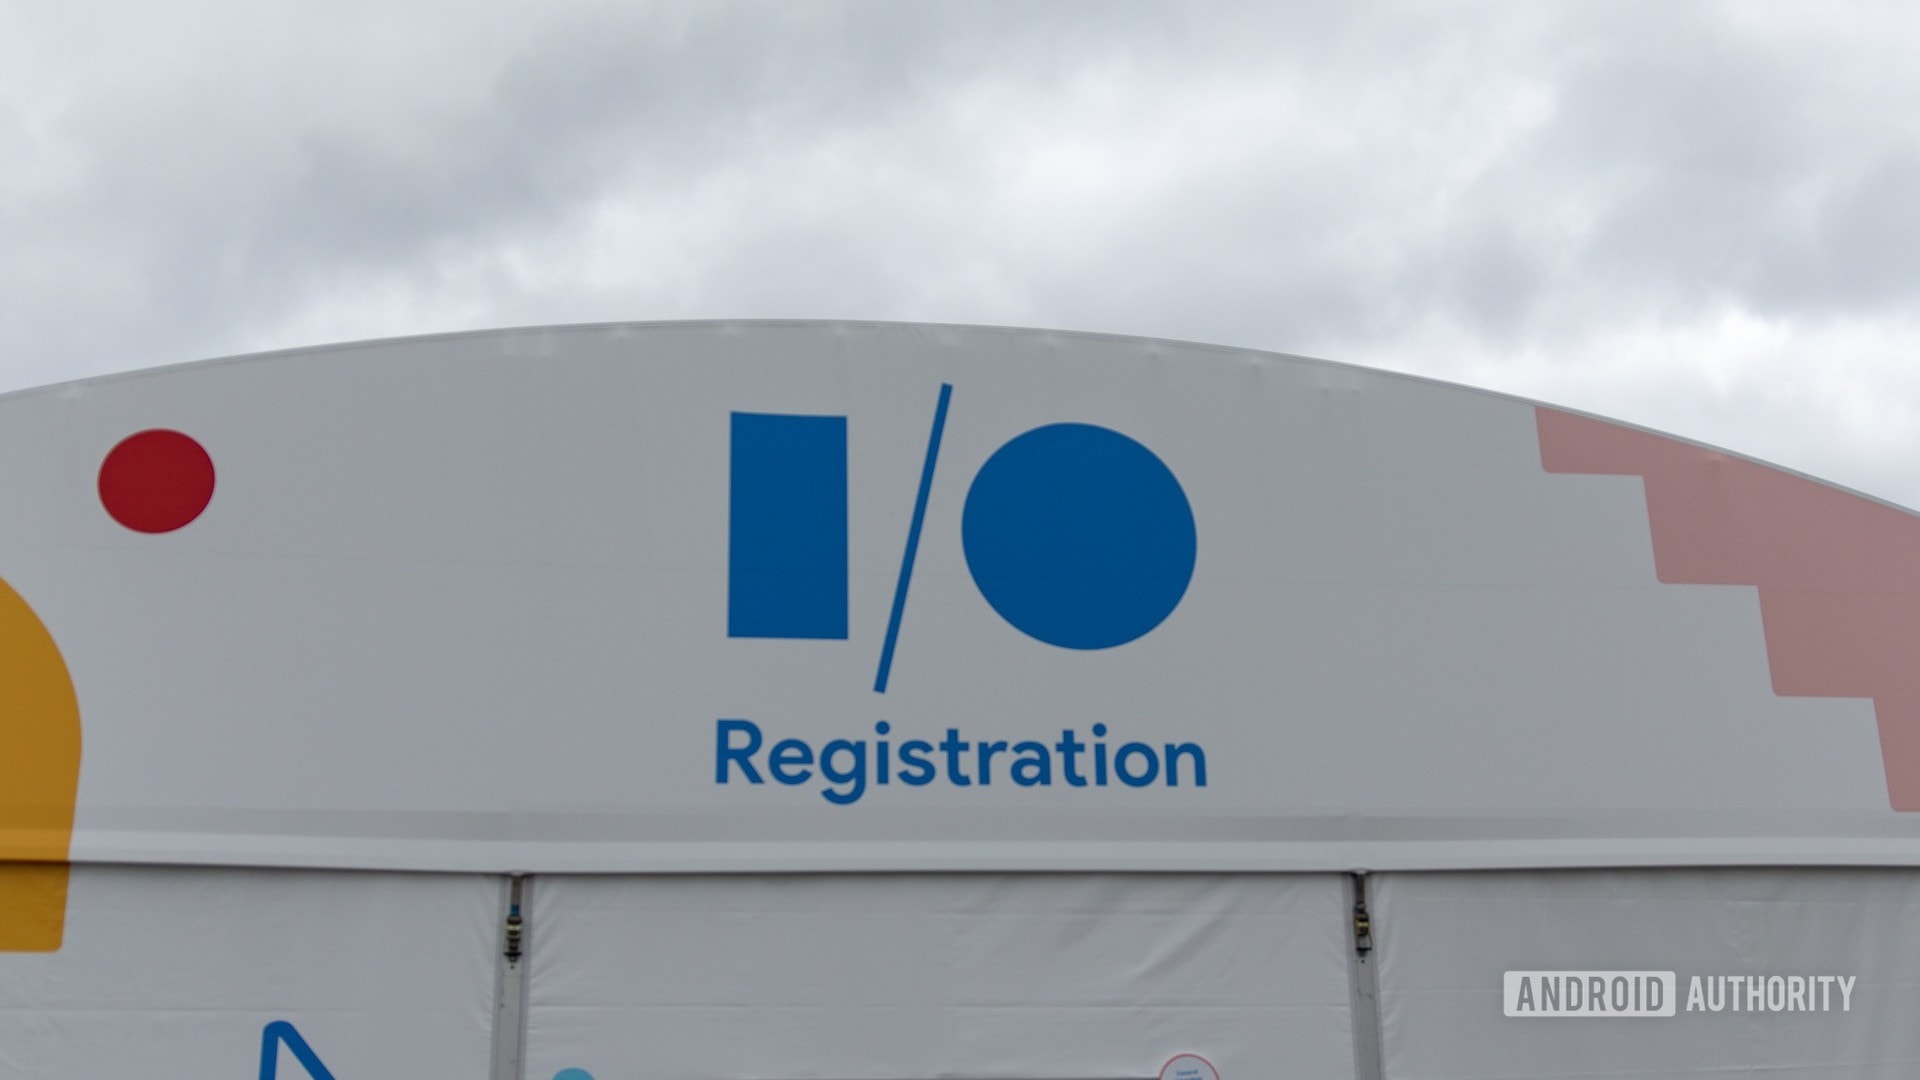 Google I/O 2019 Registration Tent Logo